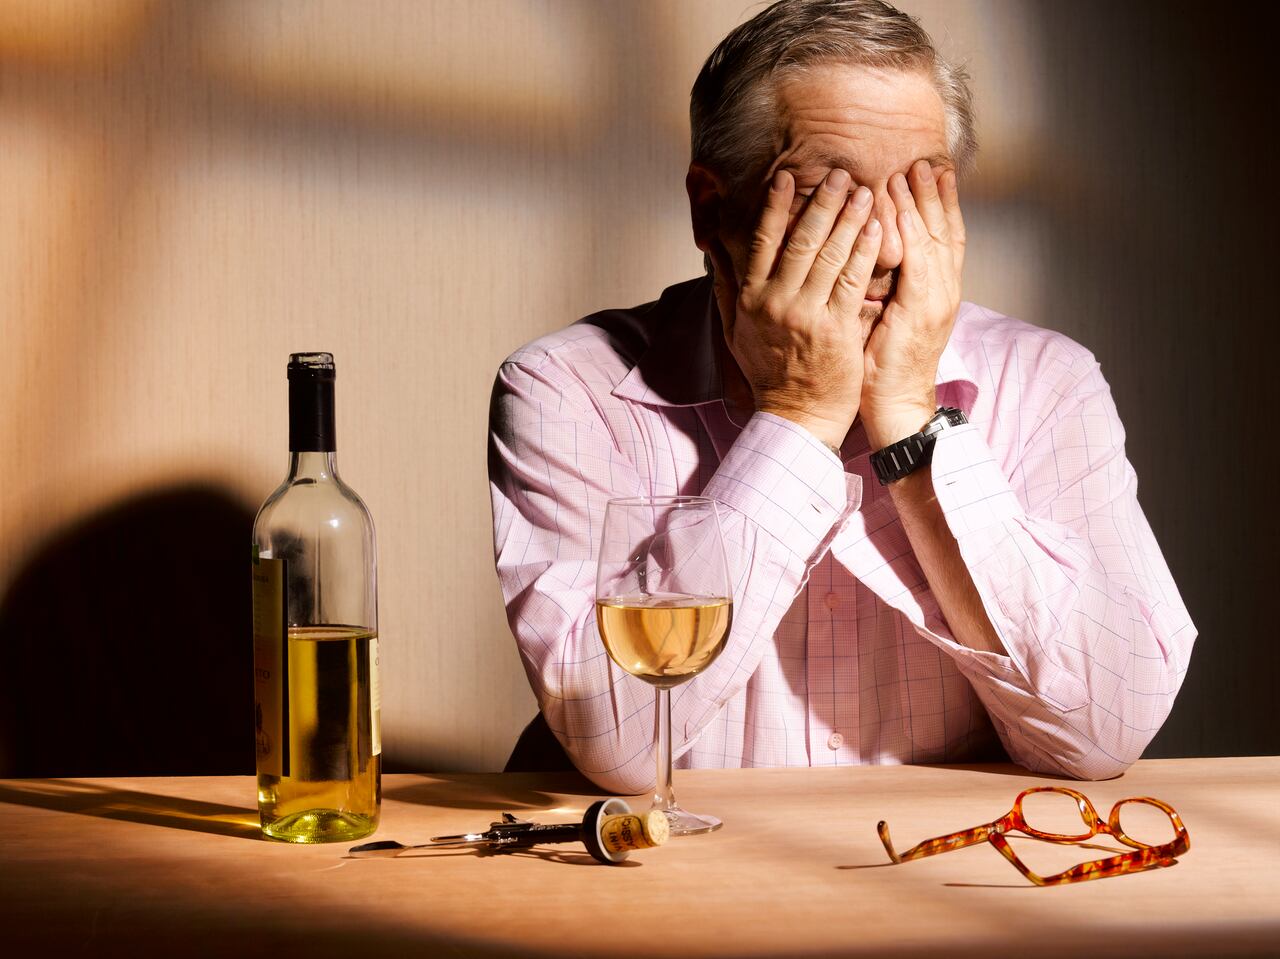 Las personas alcohólicas tienen más riesgo de padecer de enfermedades en el hígado y otras afecciones.